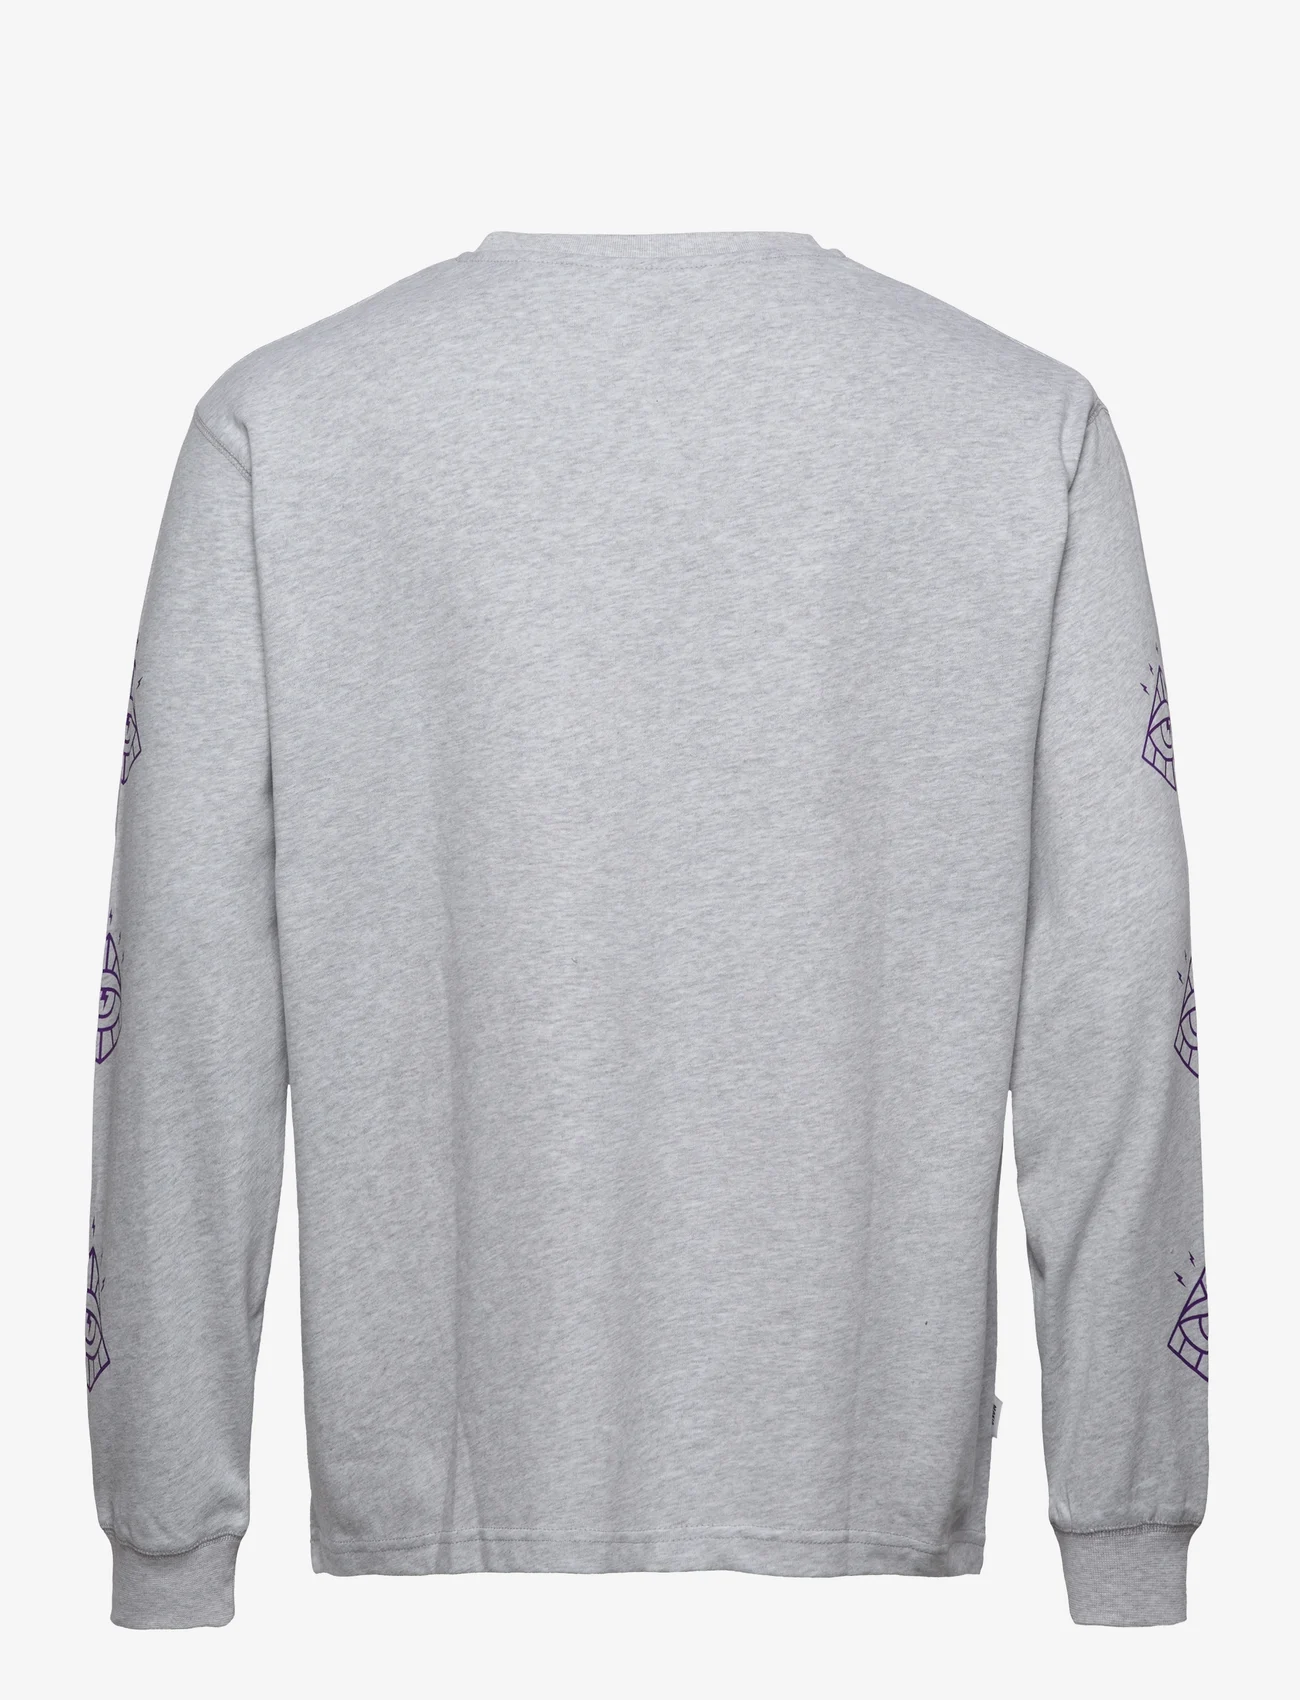 Makia - Vision Long Sleeve - langermede t-skjorter - light grey - 1